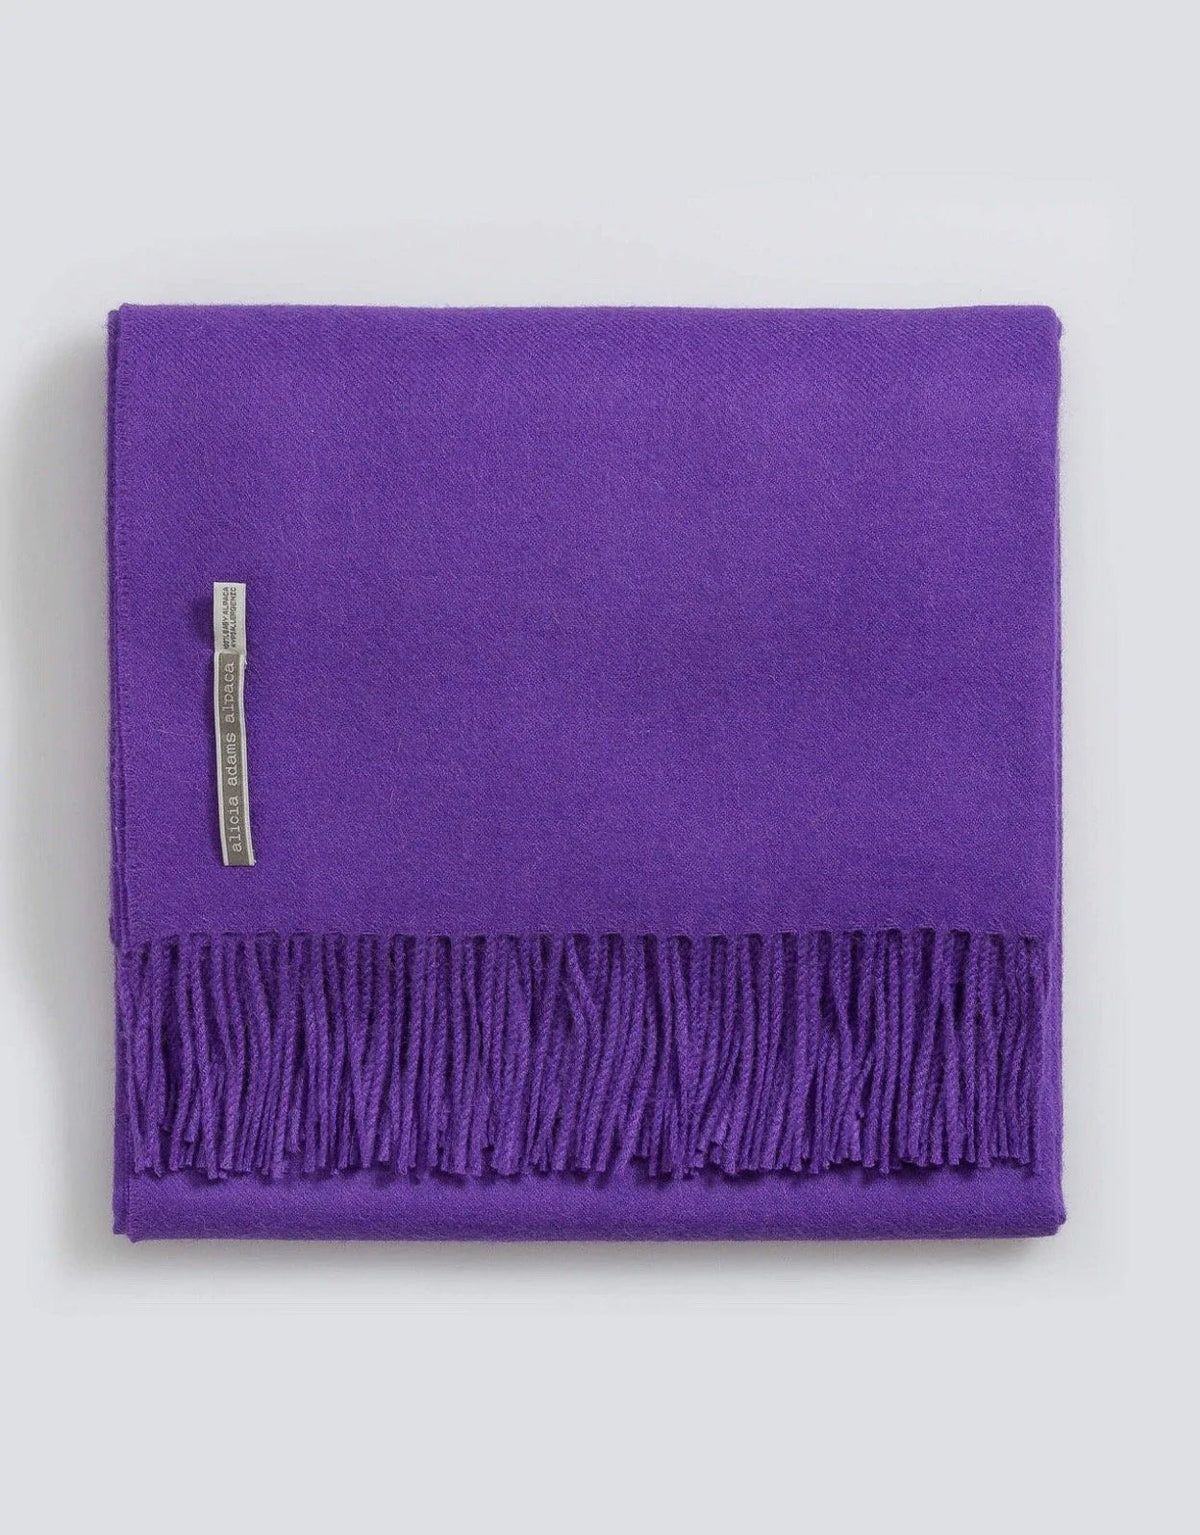 Alicia Adams Alpaca Throw in Sassy Purple Solid